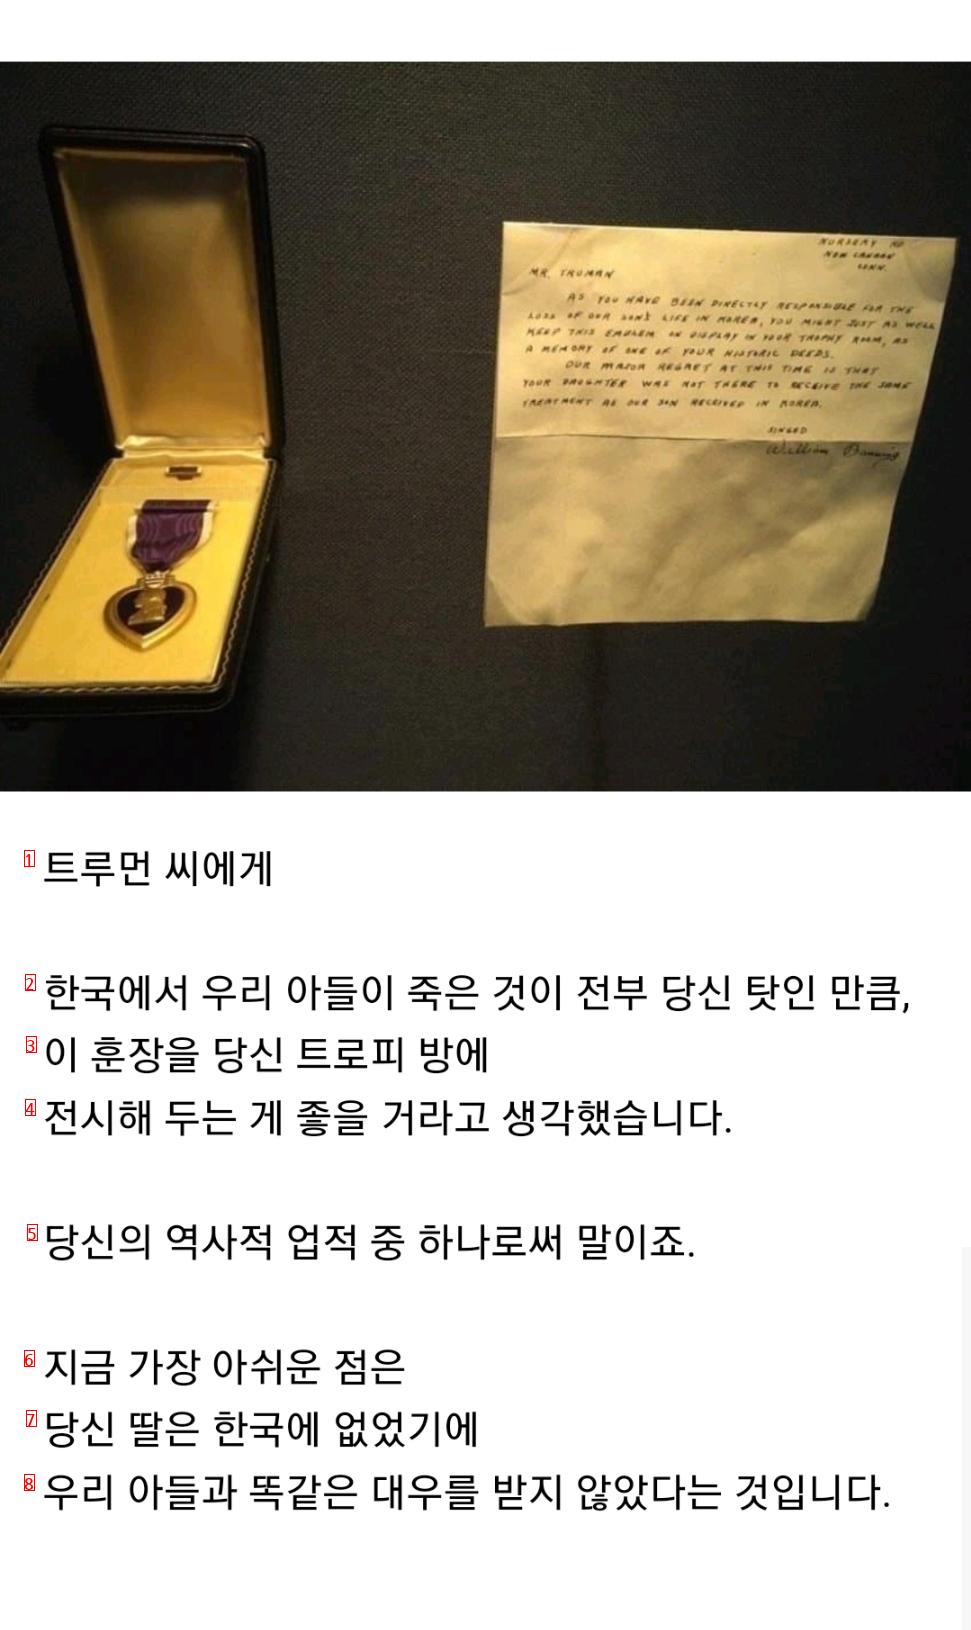 トルーマン大統領が亡くなる日まで保管していた手紙と勲章